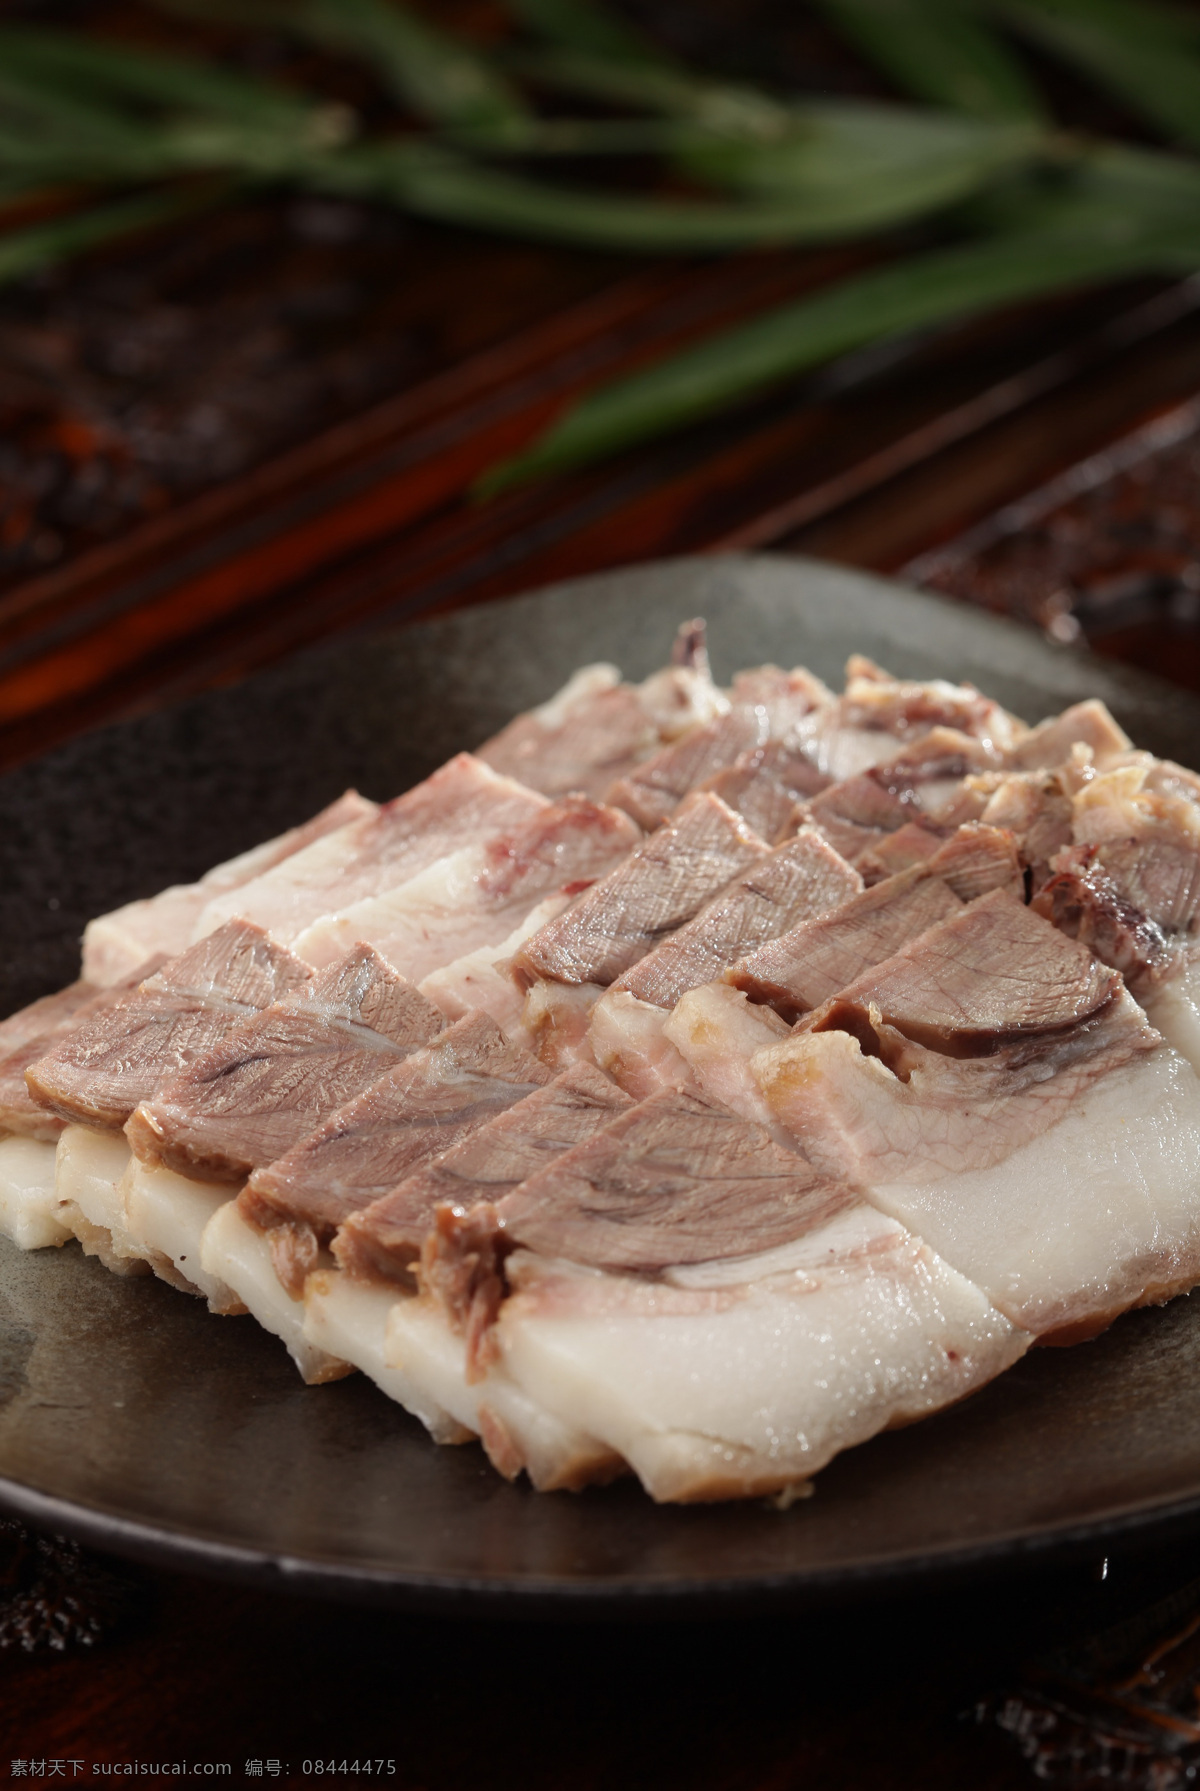 猪头肉 猪头 肉 卤猪头 卤猪头肉 盐水猪头肉 盐水猪头 凉菜 餐饮美食 传统美食